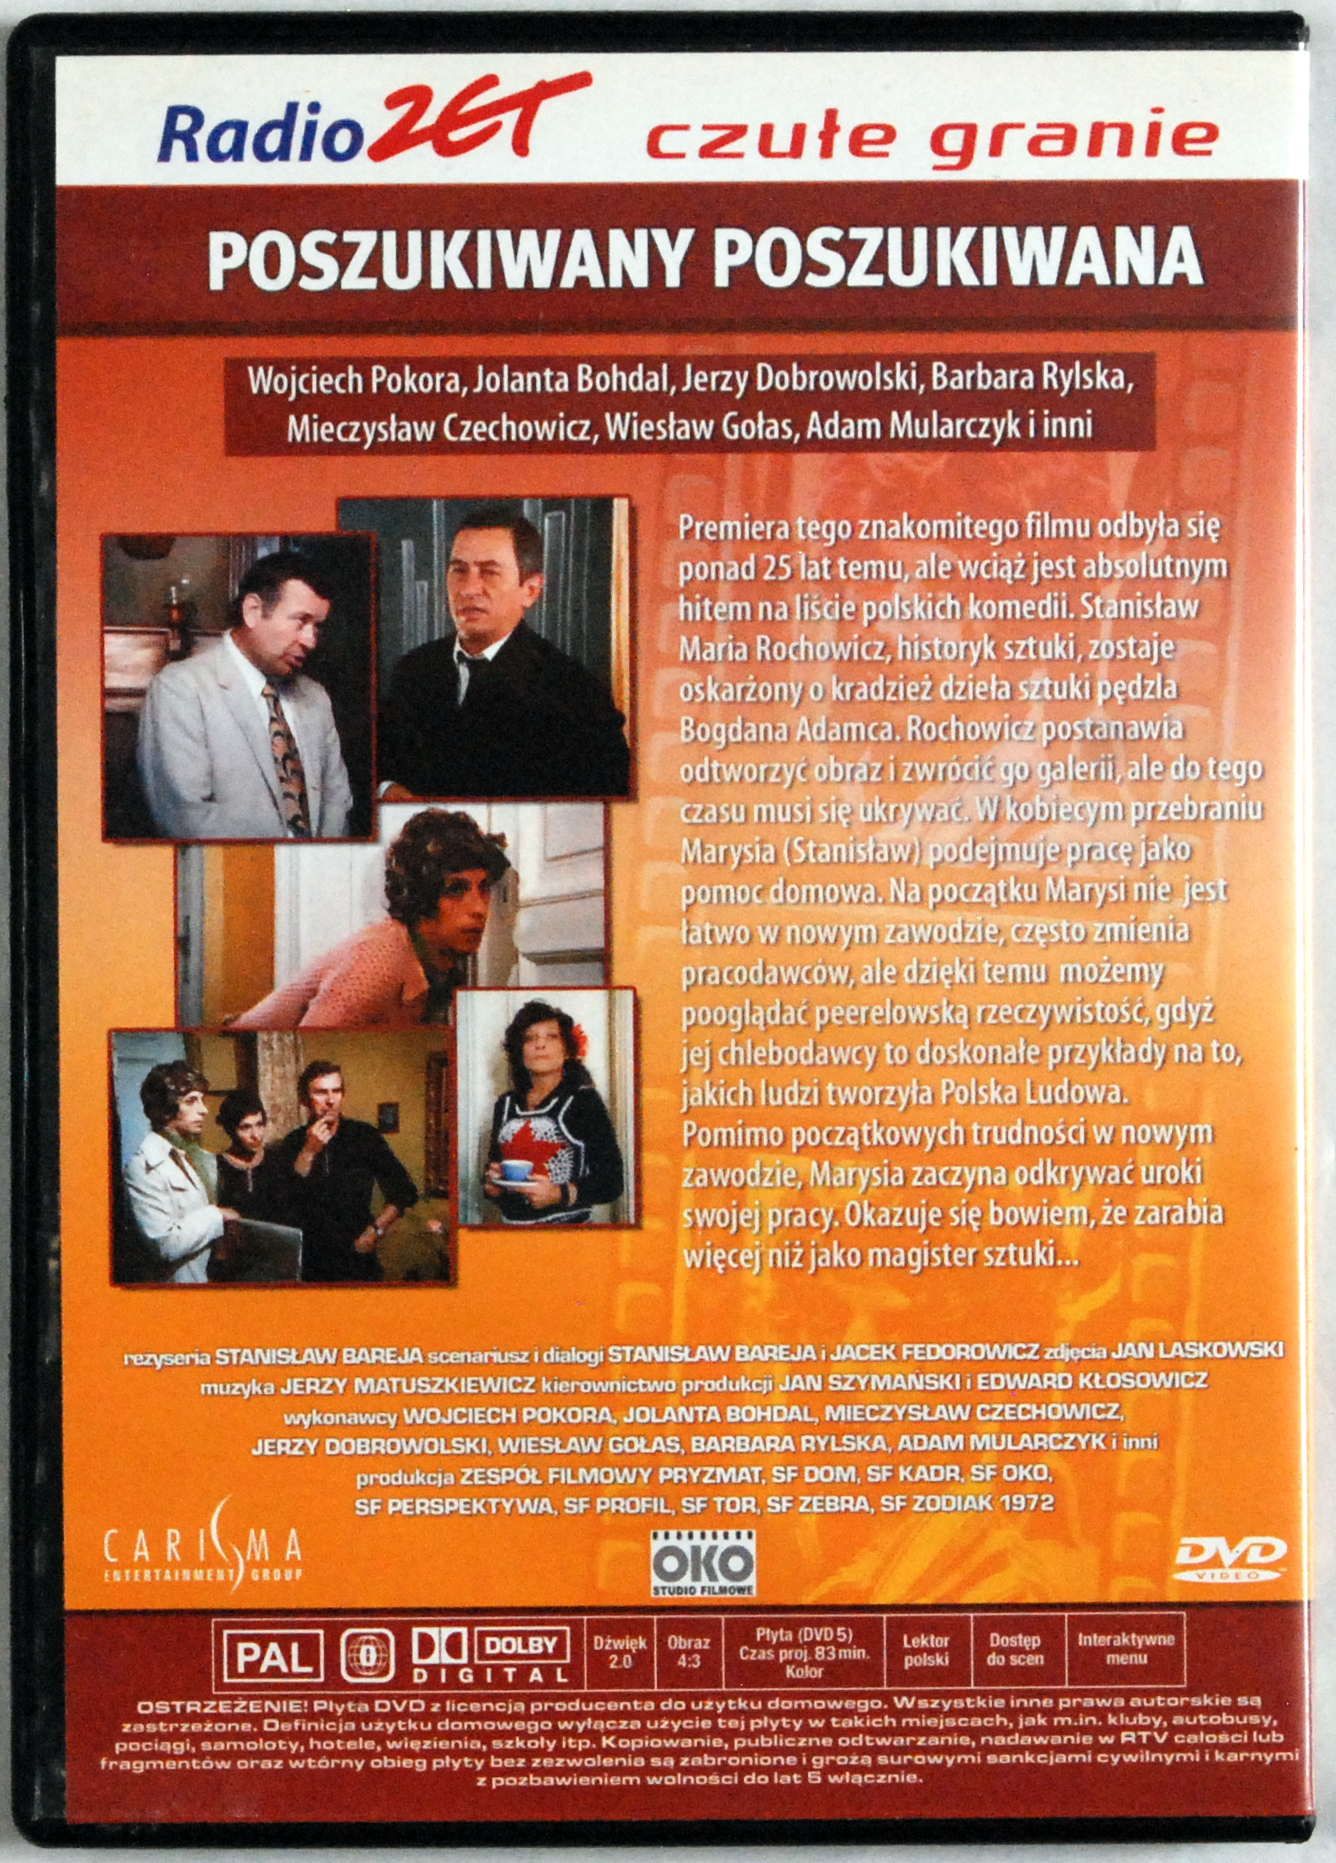 DVD Poszukiwany Poszukiwana (Carisma) s.BDB